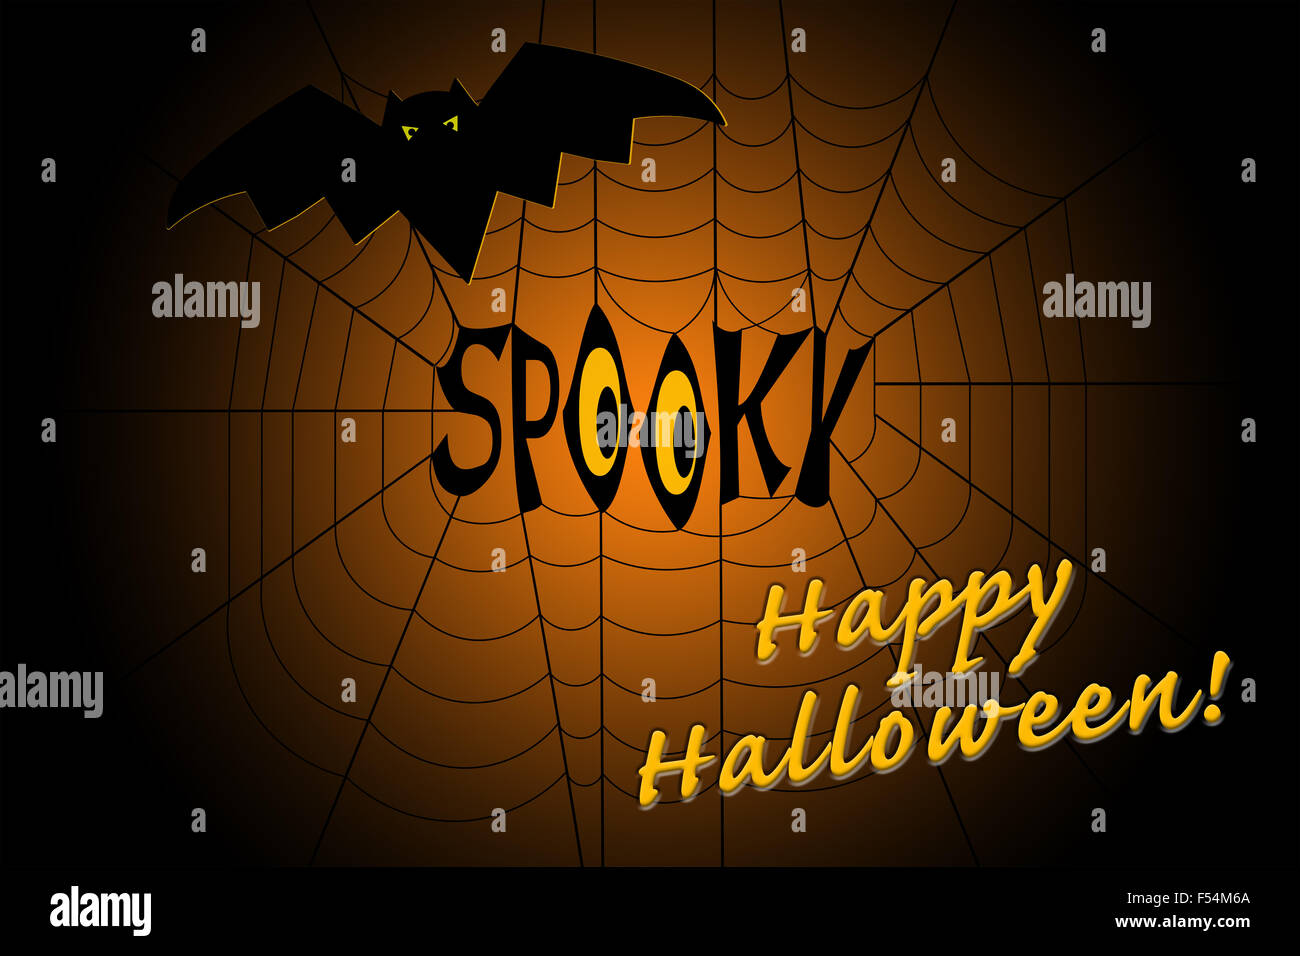 Mot spooky au milieu d'une toile d'araignée, avec un peu d'bat, et une bonne volonté Hallween sur gradient background Banque D'Images